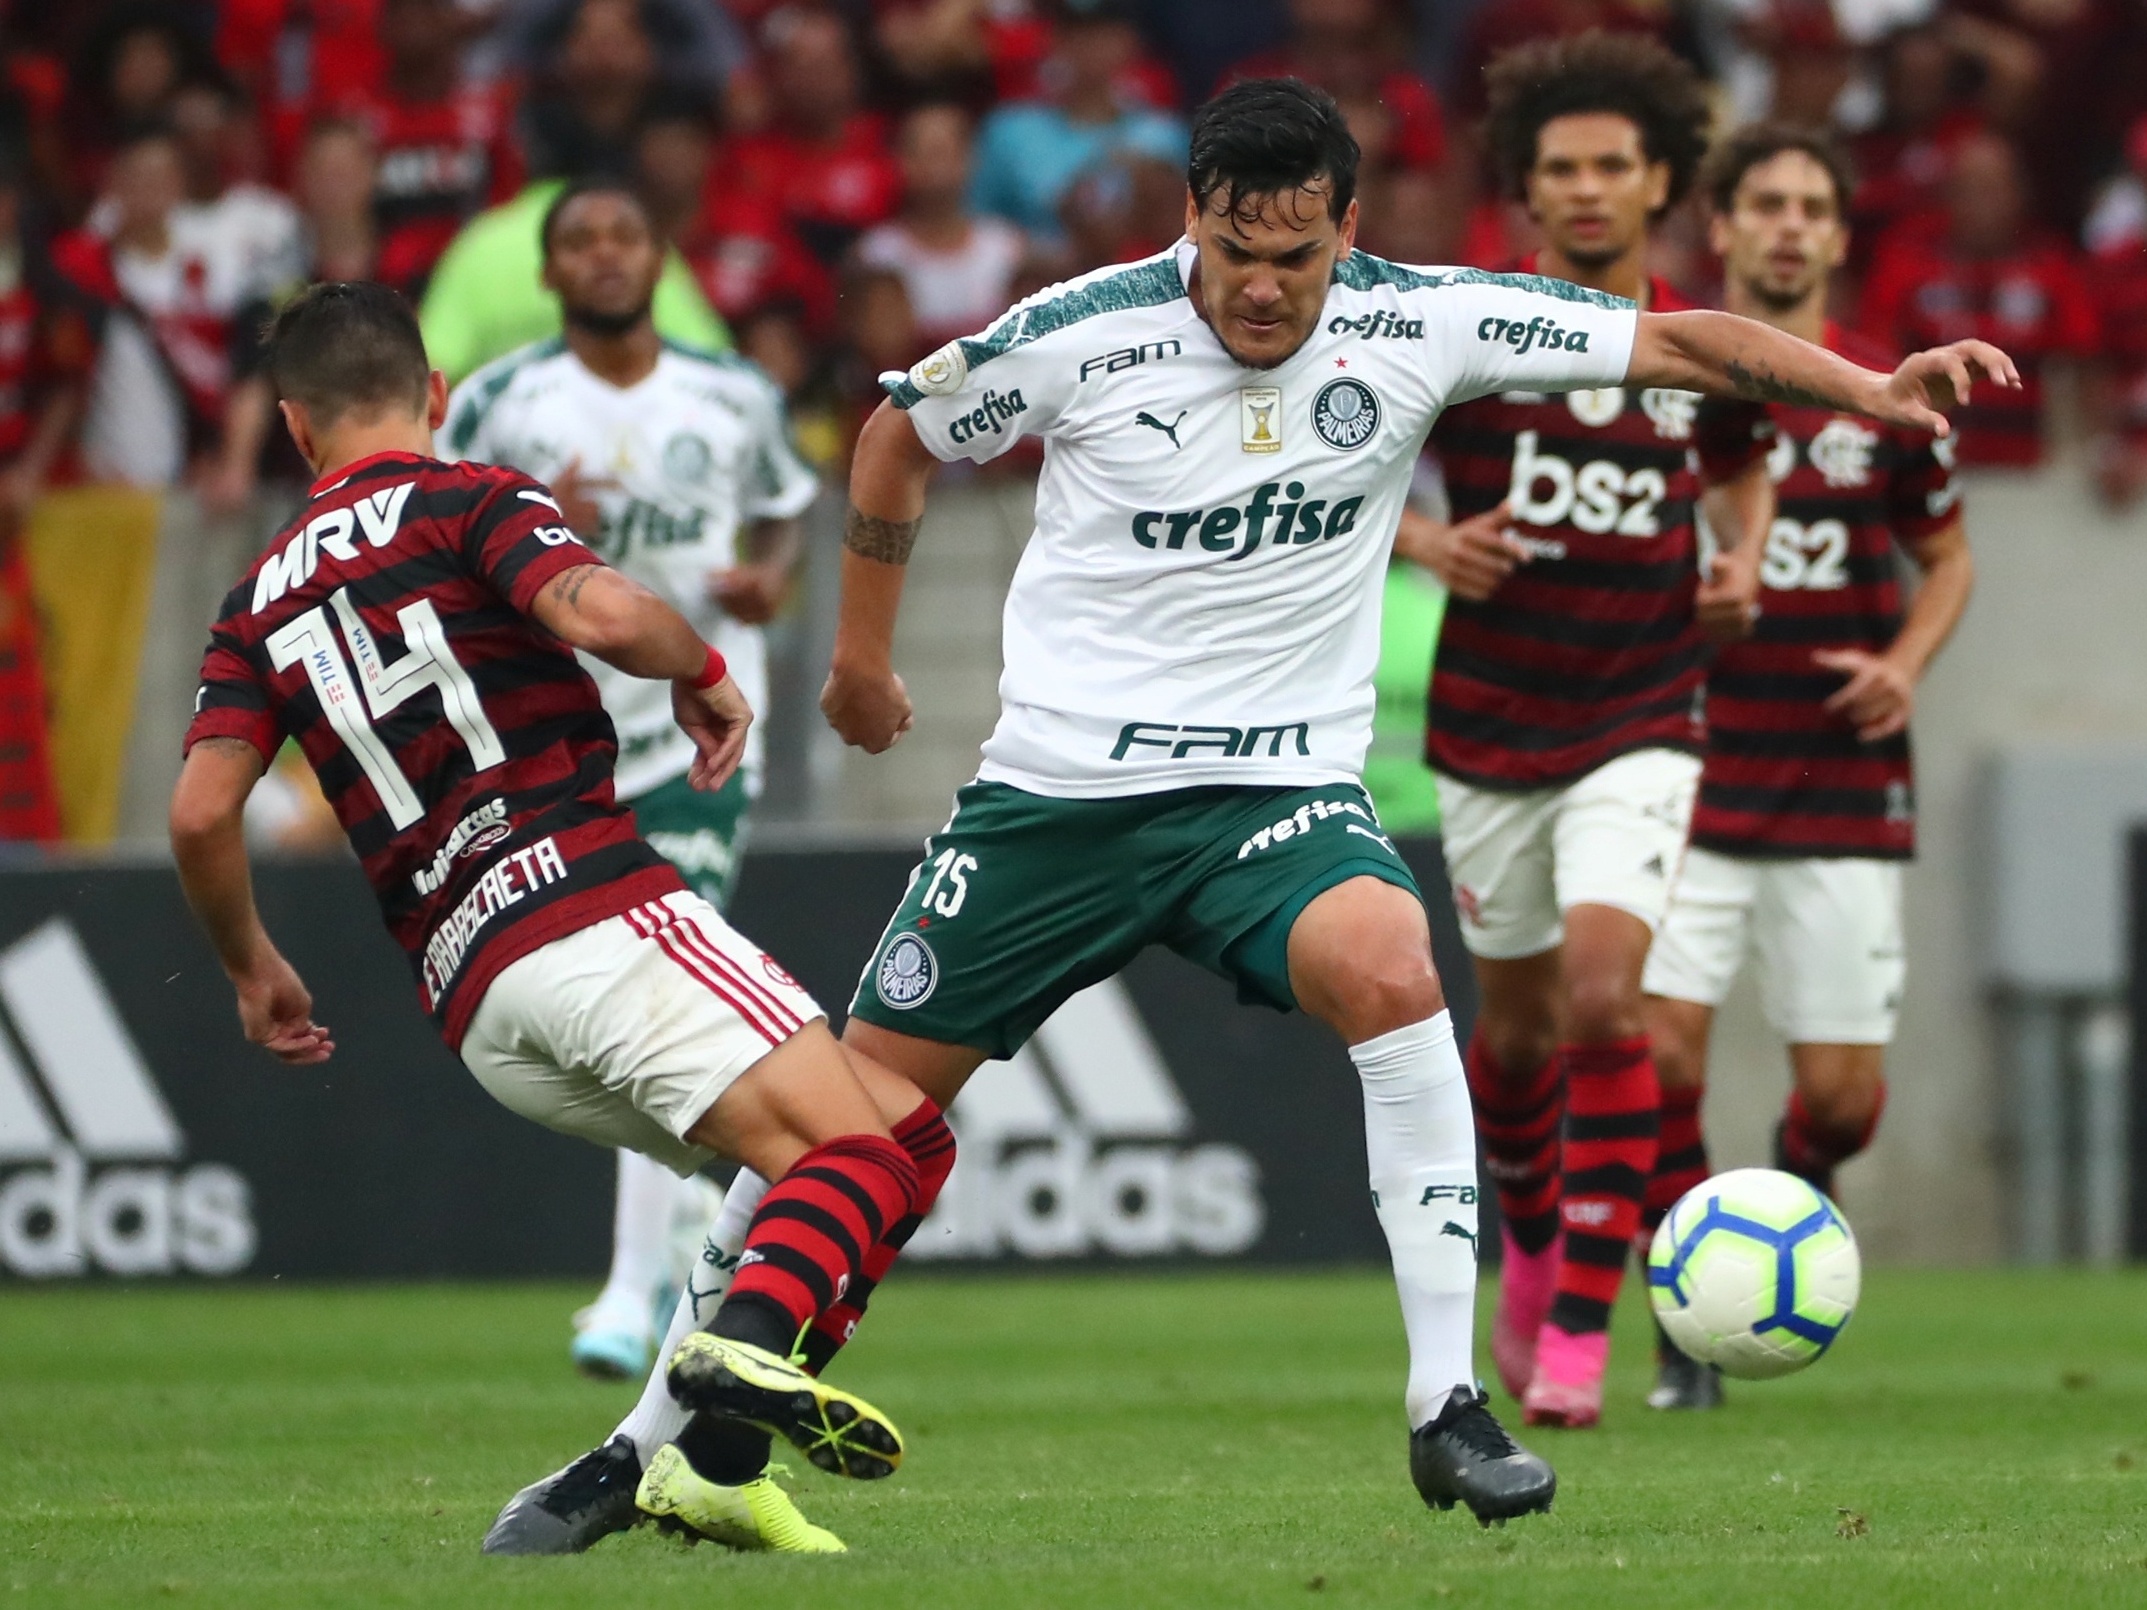 Confrontos entre Palmeiras e Flamengo no futebol – Wikipédia, a  enciclopédia livre